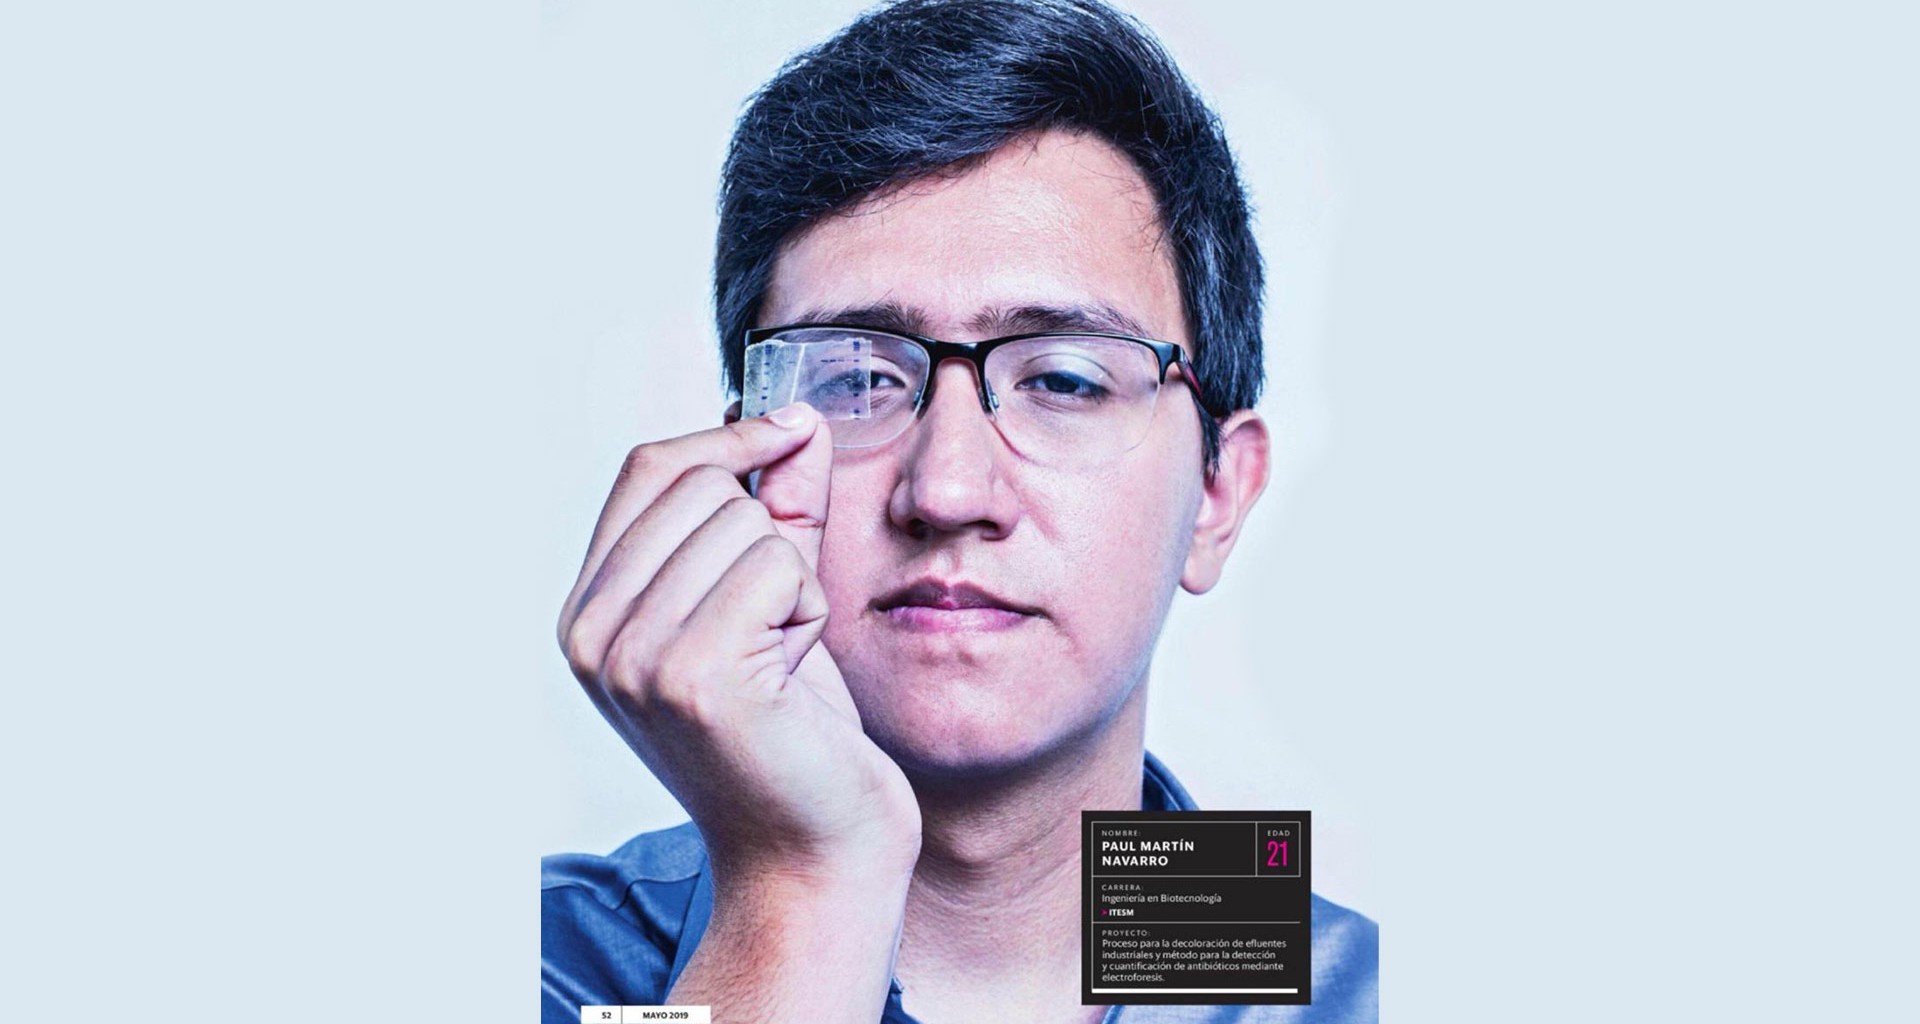 Estudiante del Tec reconocido como promesa de la ingeniería mexicana